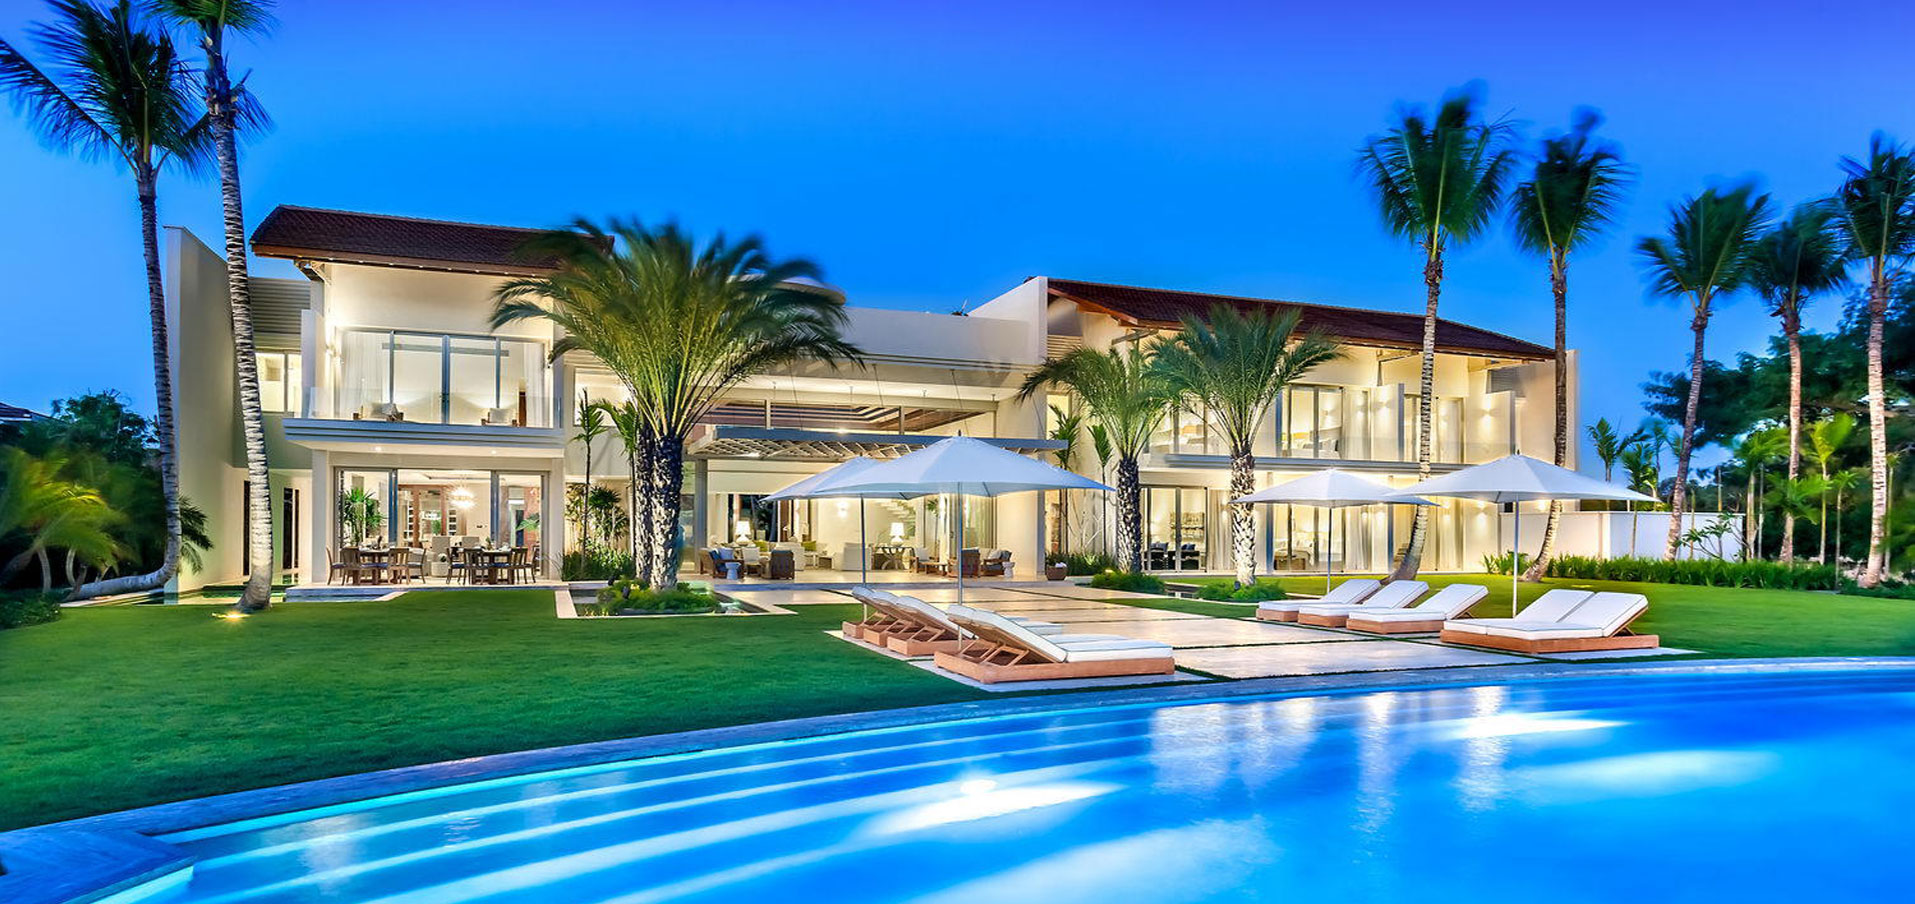 #0 Magnificent modern beachfront villa in prestigious location